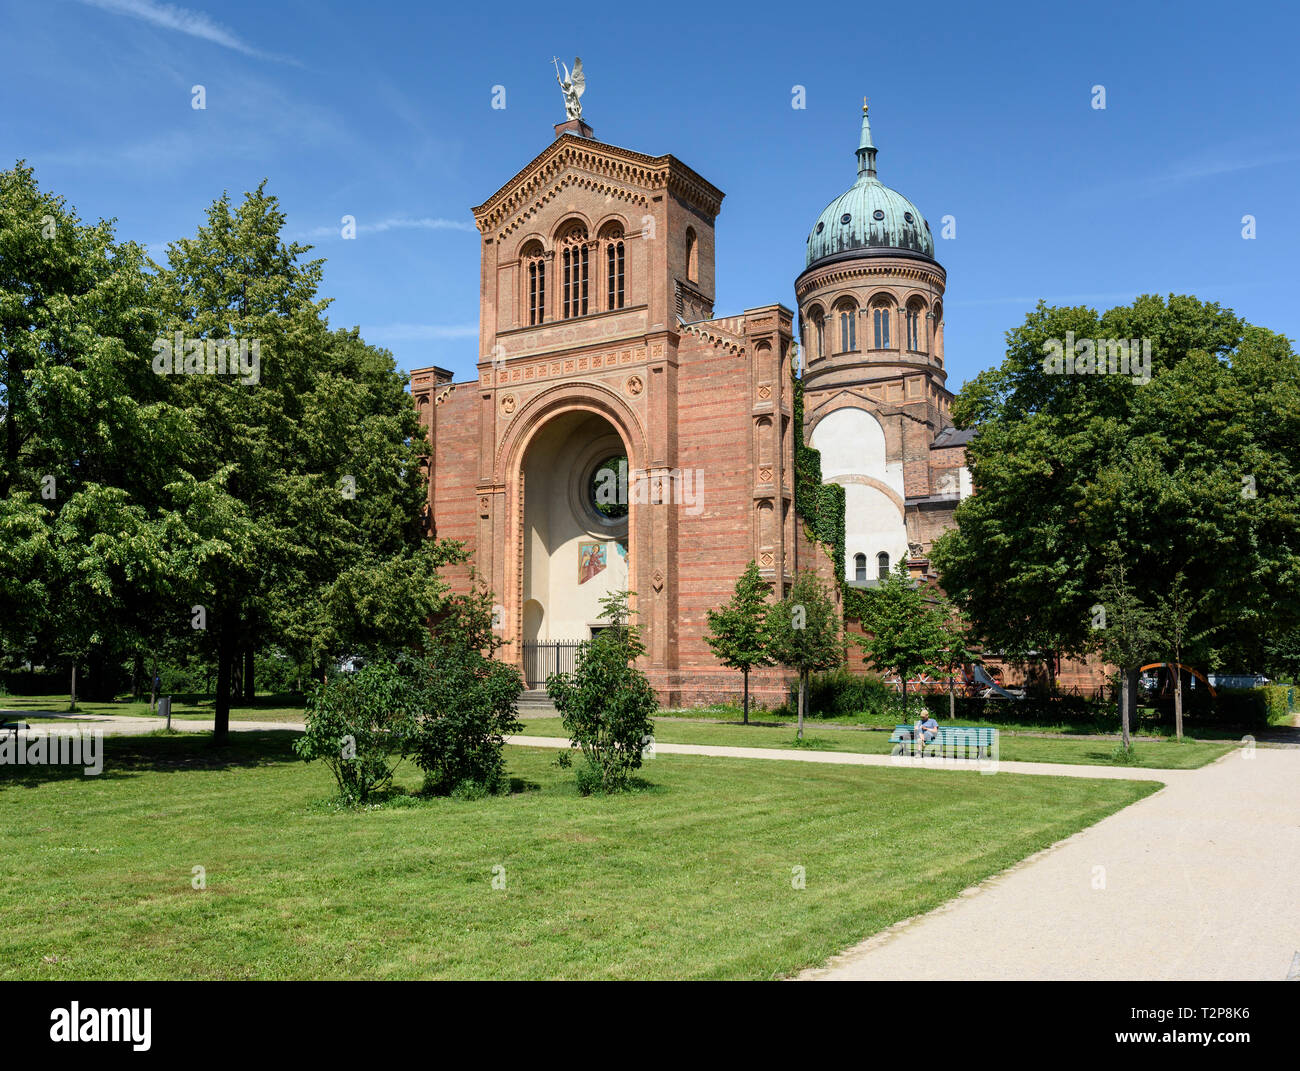 Berlin. L'Allemagne. Sankt Michael Kirche (St. Michael's Church) conçu par Soller (1805-1853) Août 1845, construit de 1851 à 1856. Banque D'Images